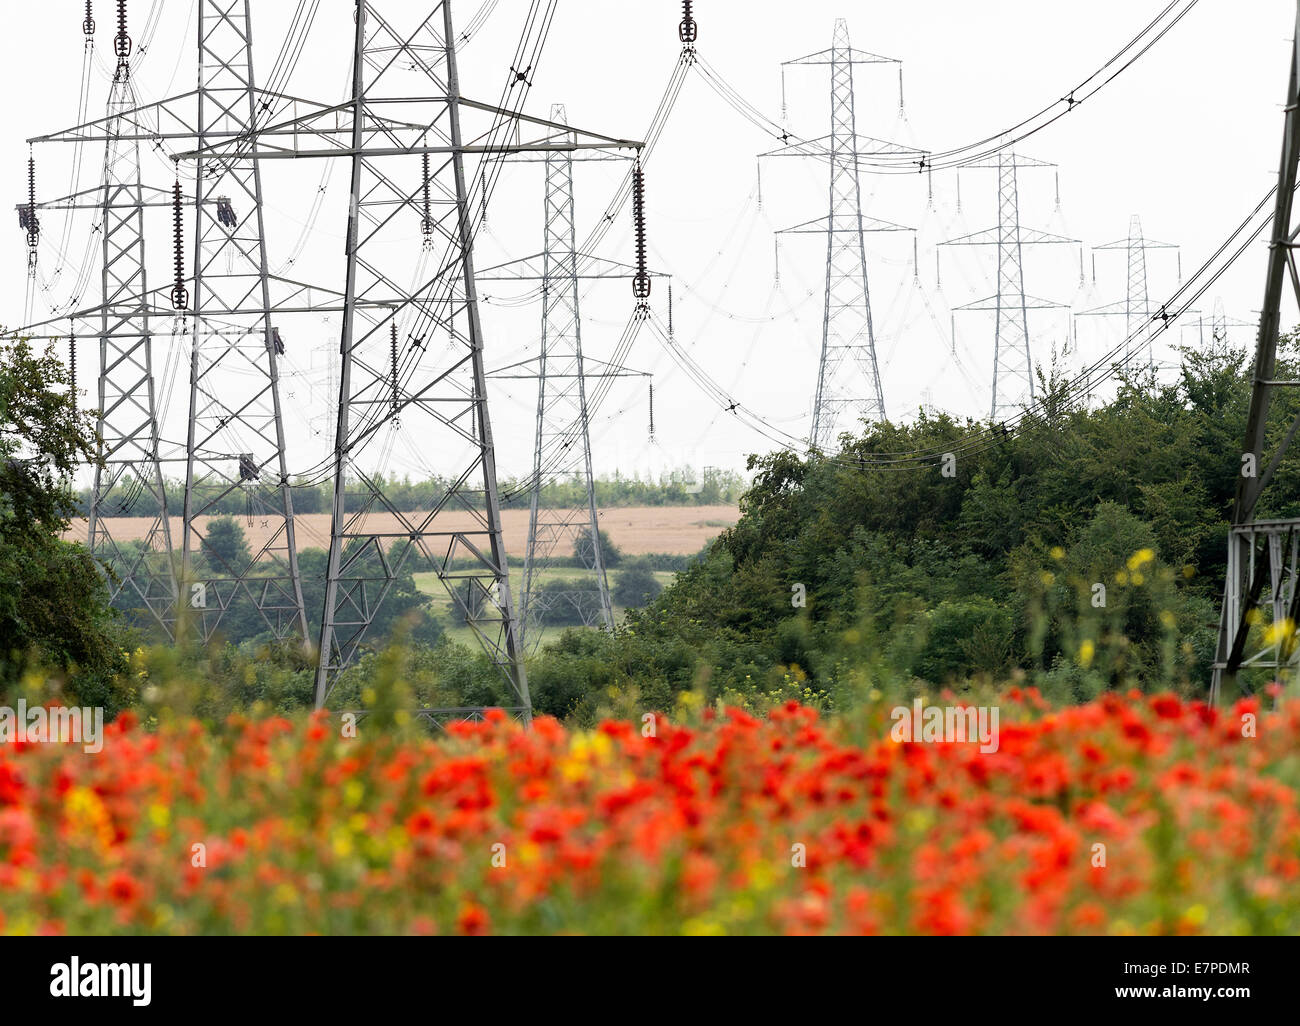 Obenliegende Elektrizität Stromkabel und Pylonen laufen durch ein Feld von rot gemeinsamen Mohn in der Nähe von Fairburn Ings Yorkshire England Stockfoto